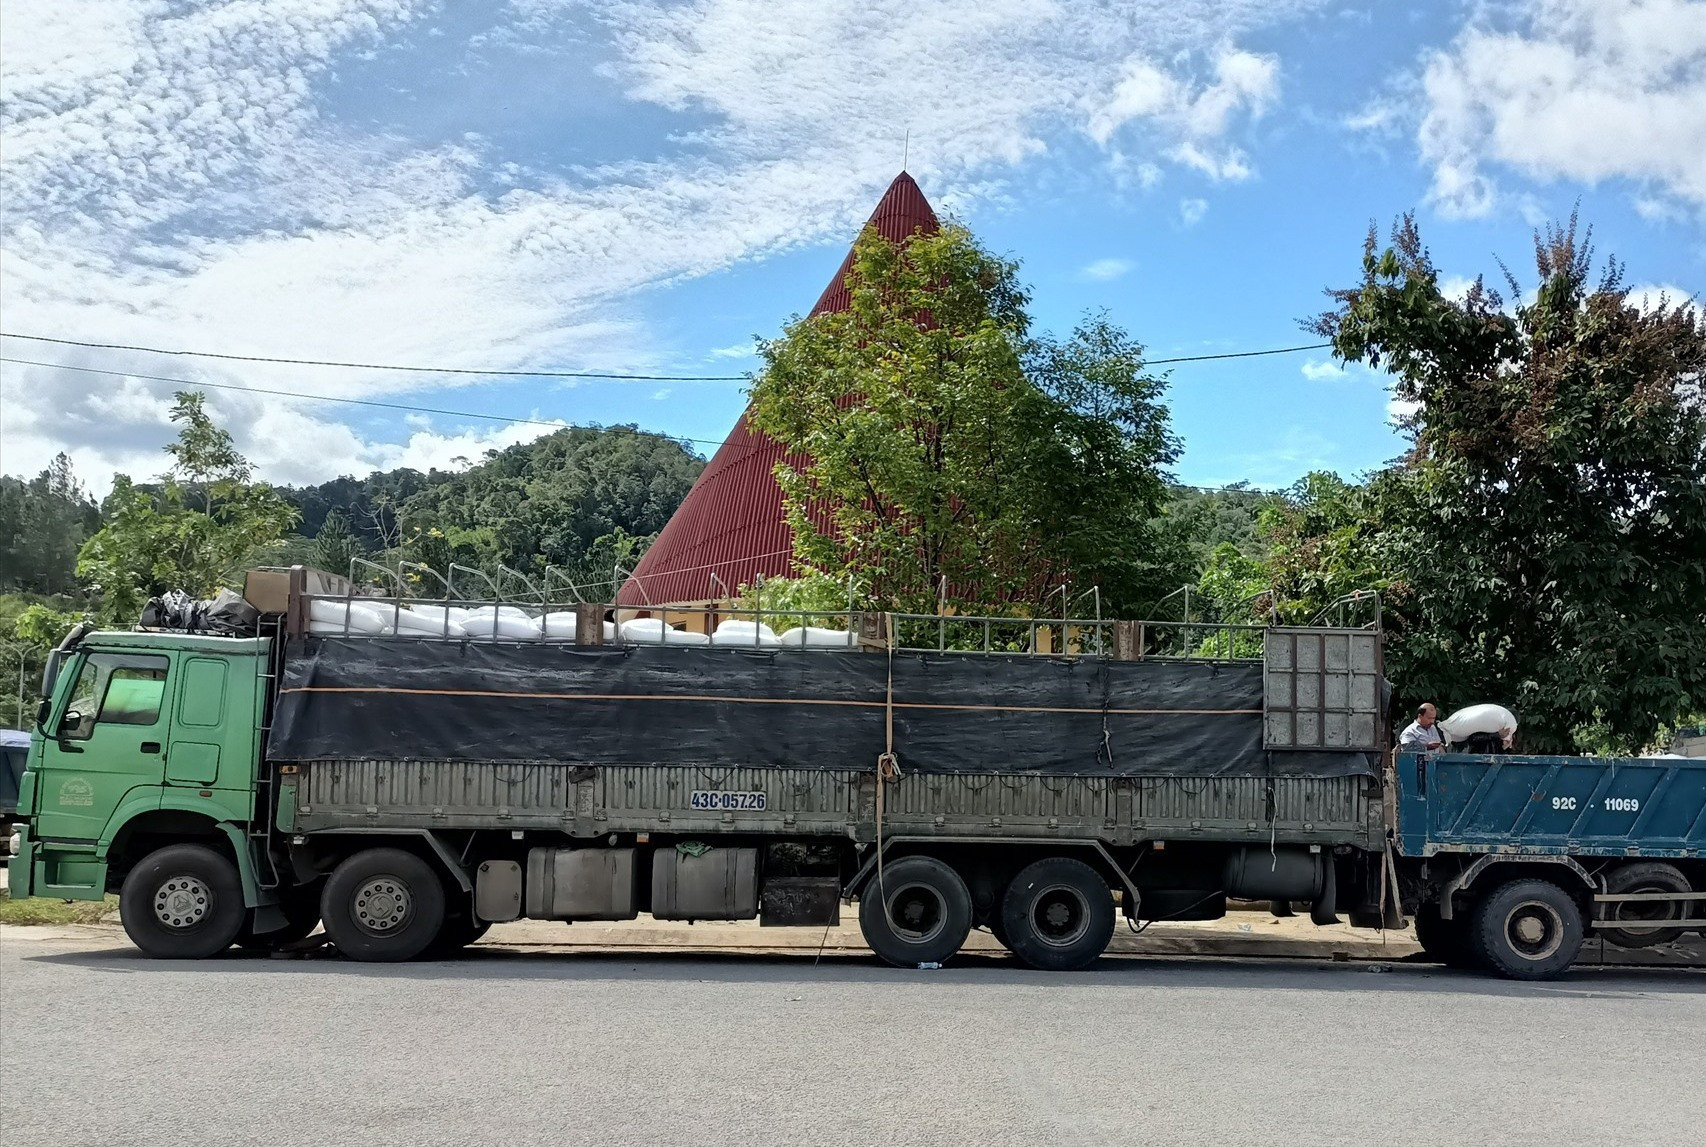 40 tấn gạo được trung chuyển cấp cho nhân dân các bản giáp ranh tỉnh Sê kông (Lào)